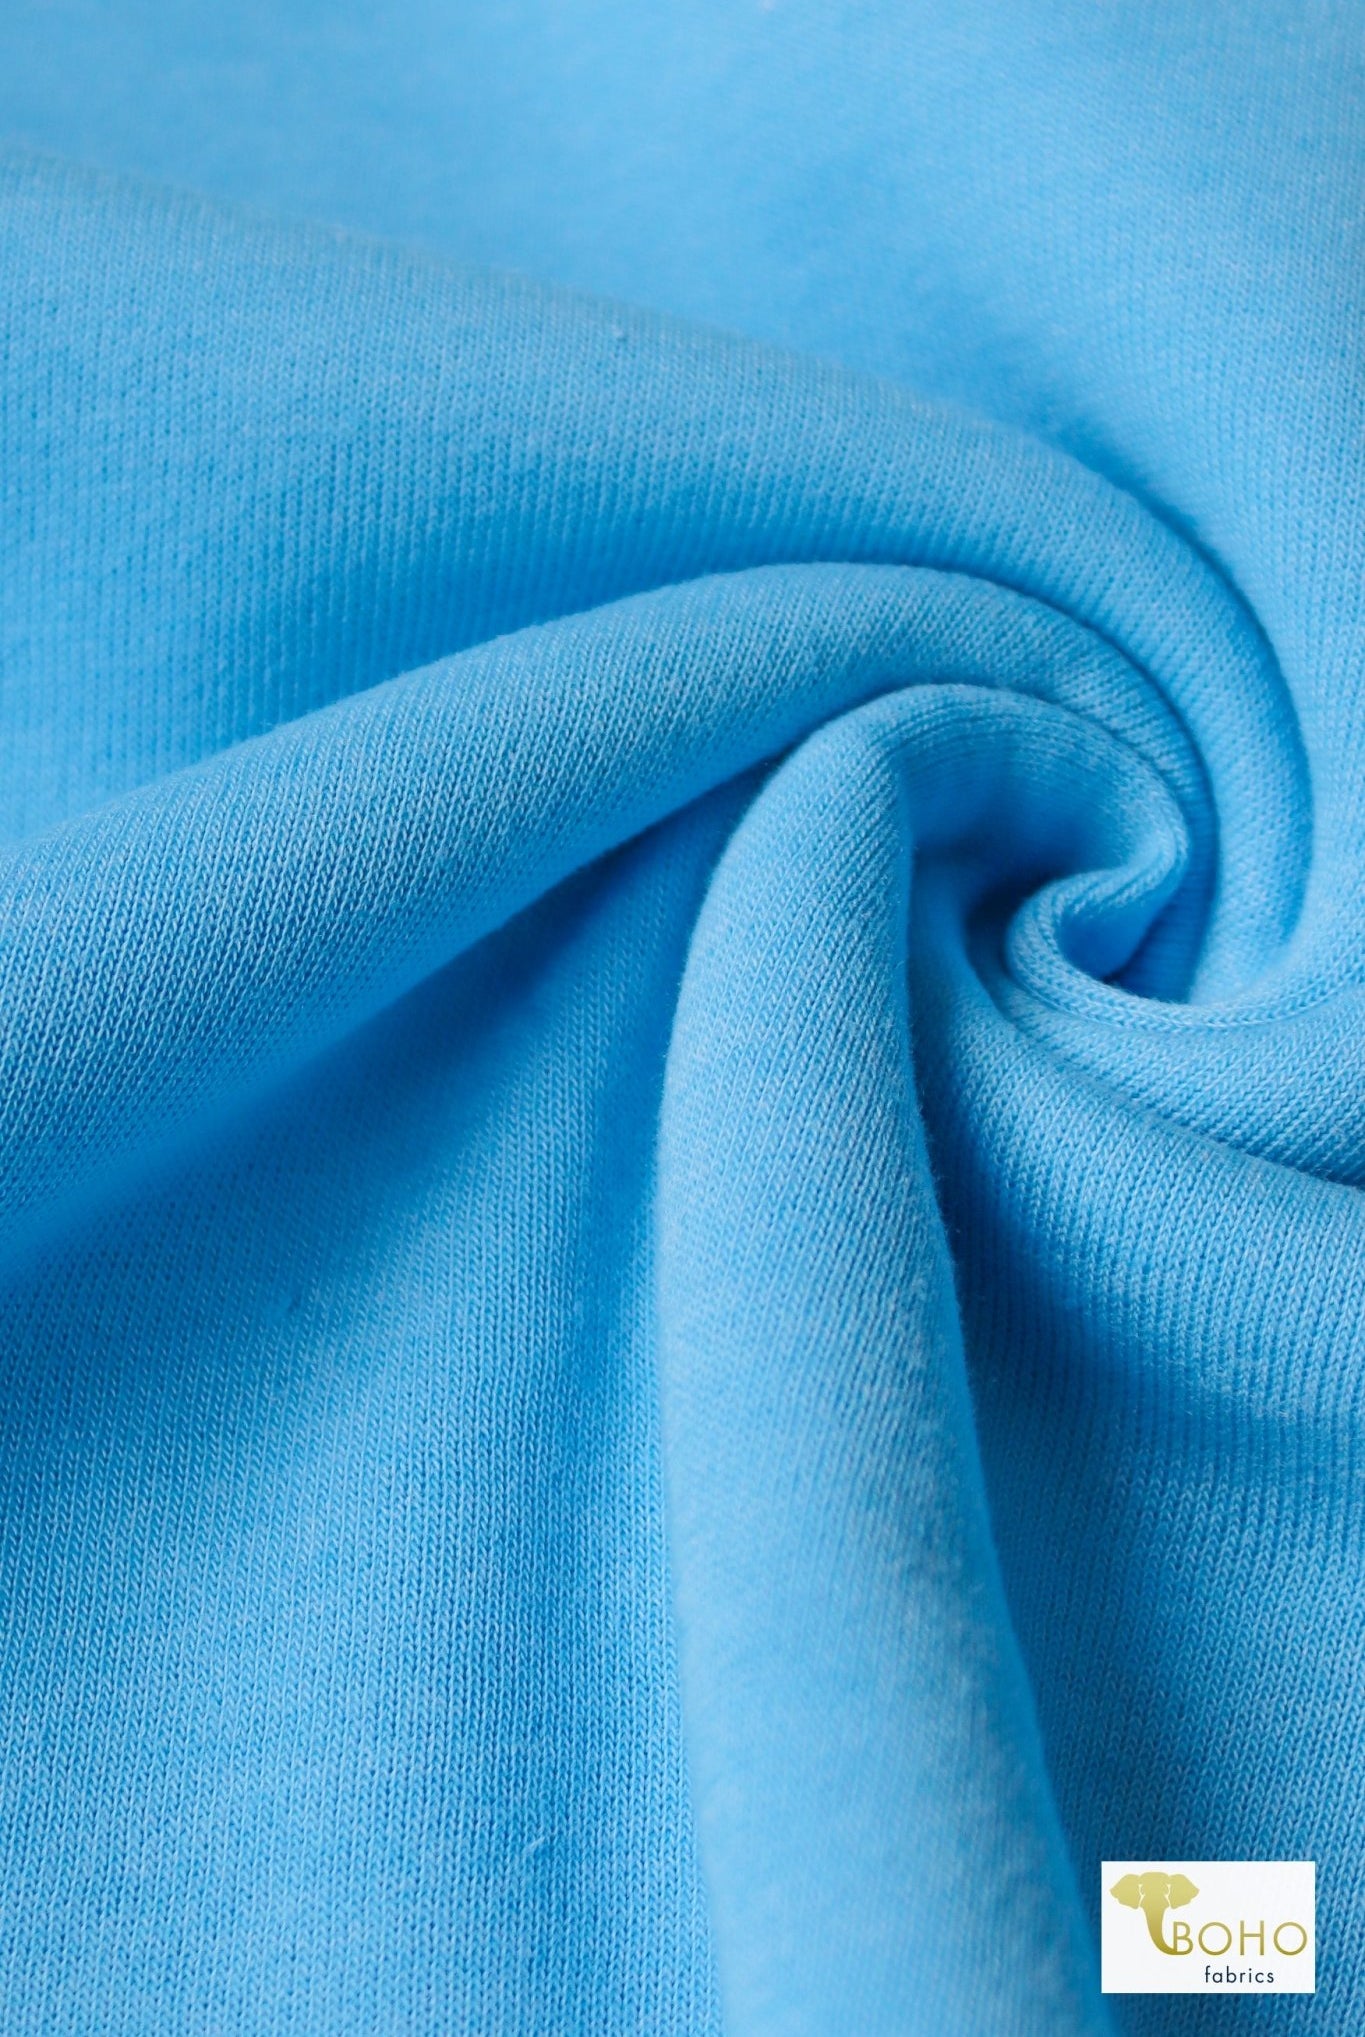 2 Yard- Last Cuts! Blue Sky, Sweatshirt Fleece. - Boho Fabrics